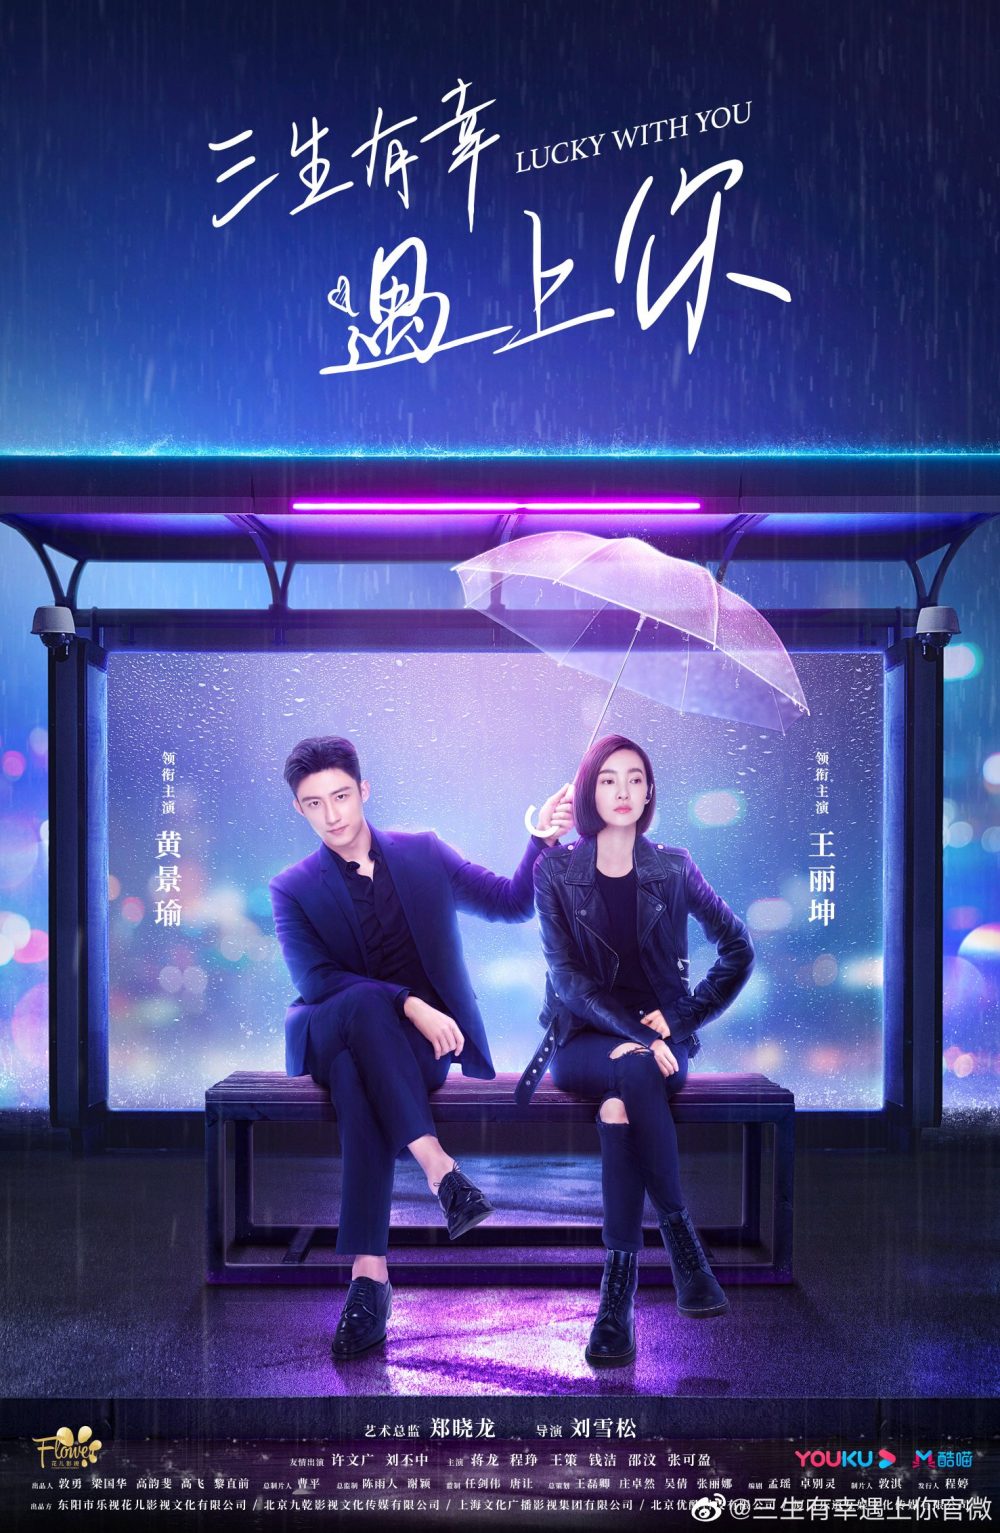 Phim mới của Hoàng Cảnh Du: Ba kiếp may mắn được gặp em - Lucky With You (2021)